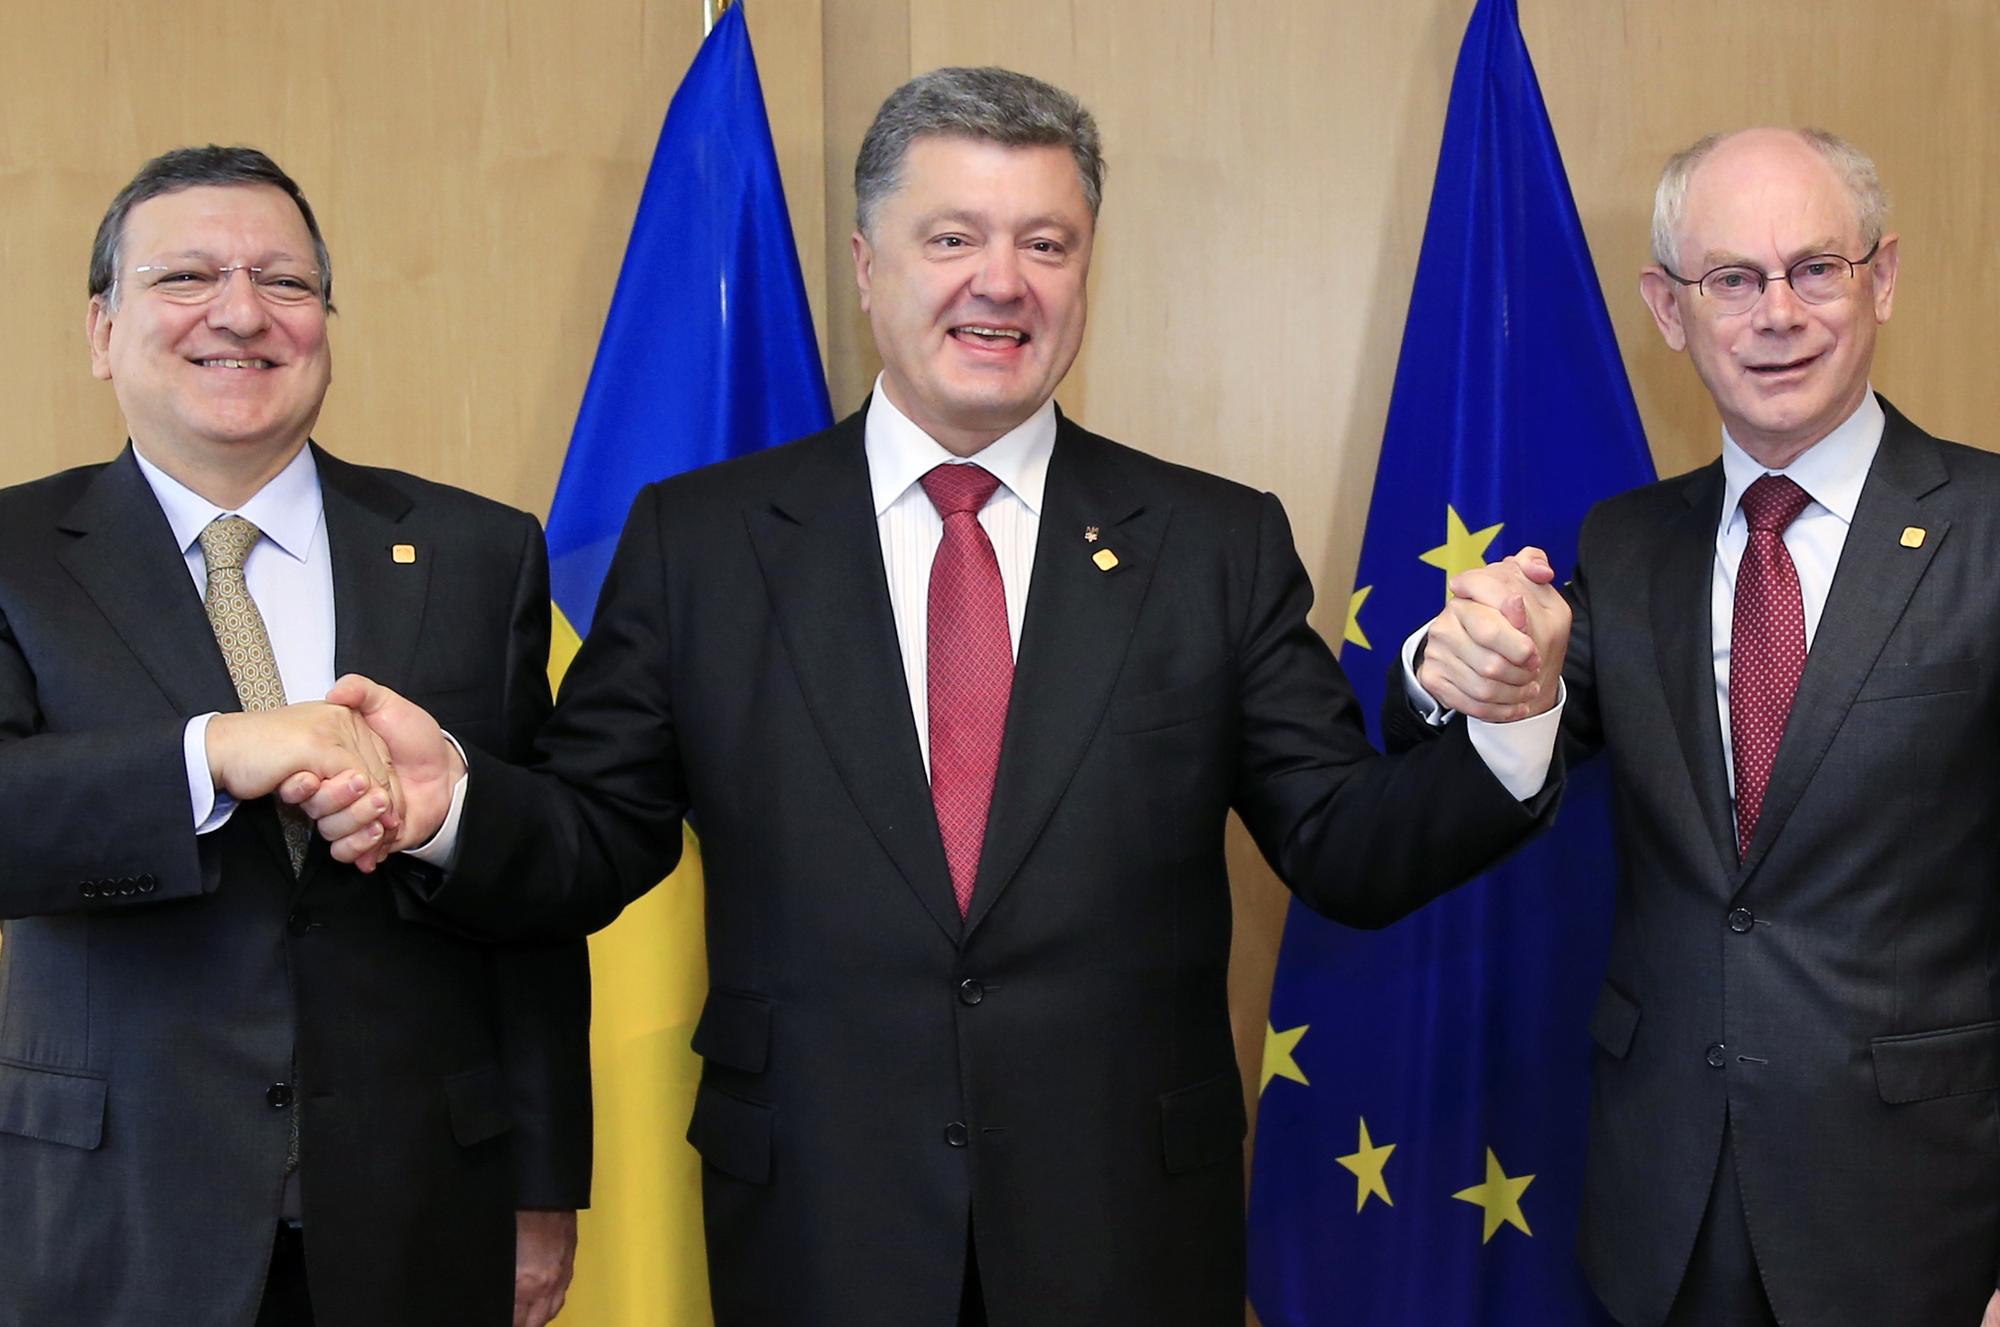 Le président ukrainien Petro Porochenko (au centre) en compagne du président de la Commission européenne Jose Manuel Barroso (à gauche) et du président du Conseil européen Herman Van Rompuy (à droite). [REUTERS - Stringer]